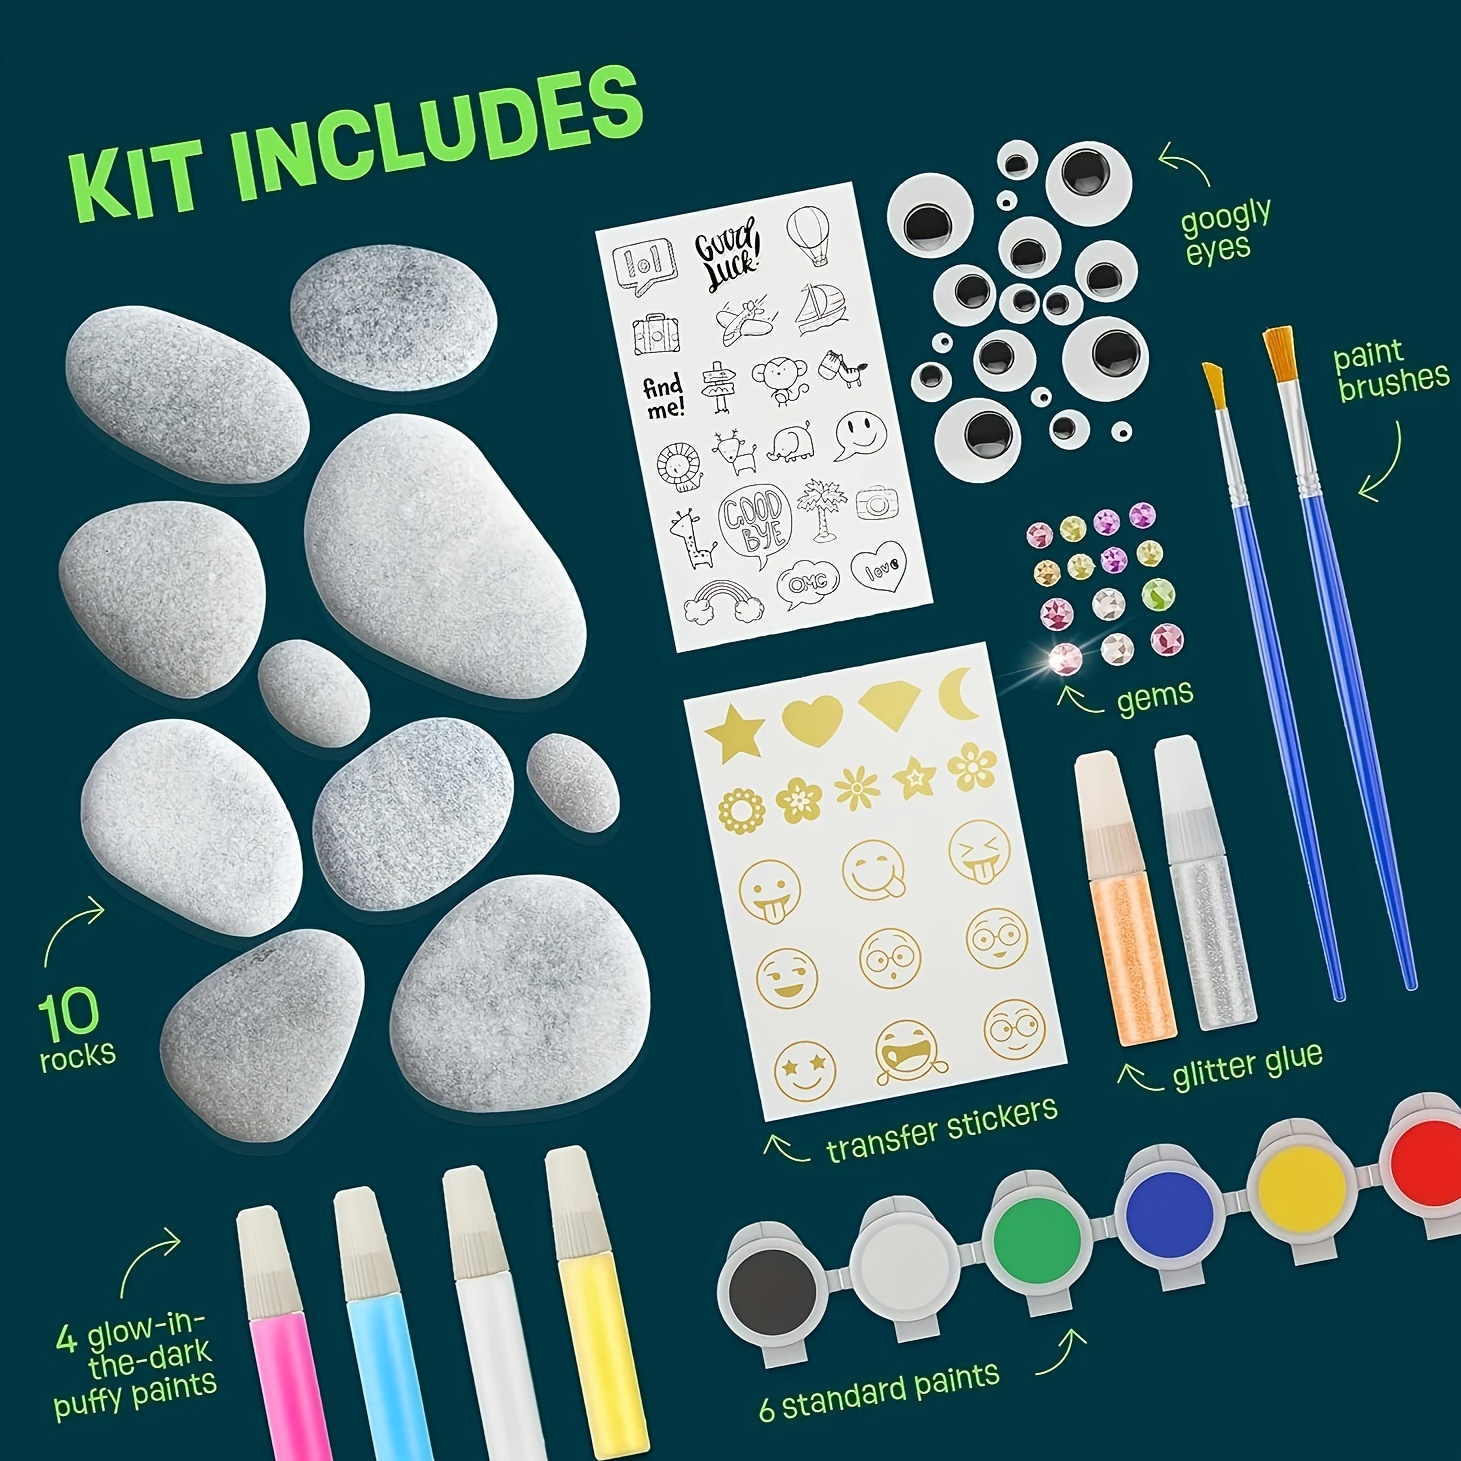 Tween Craft Kit 